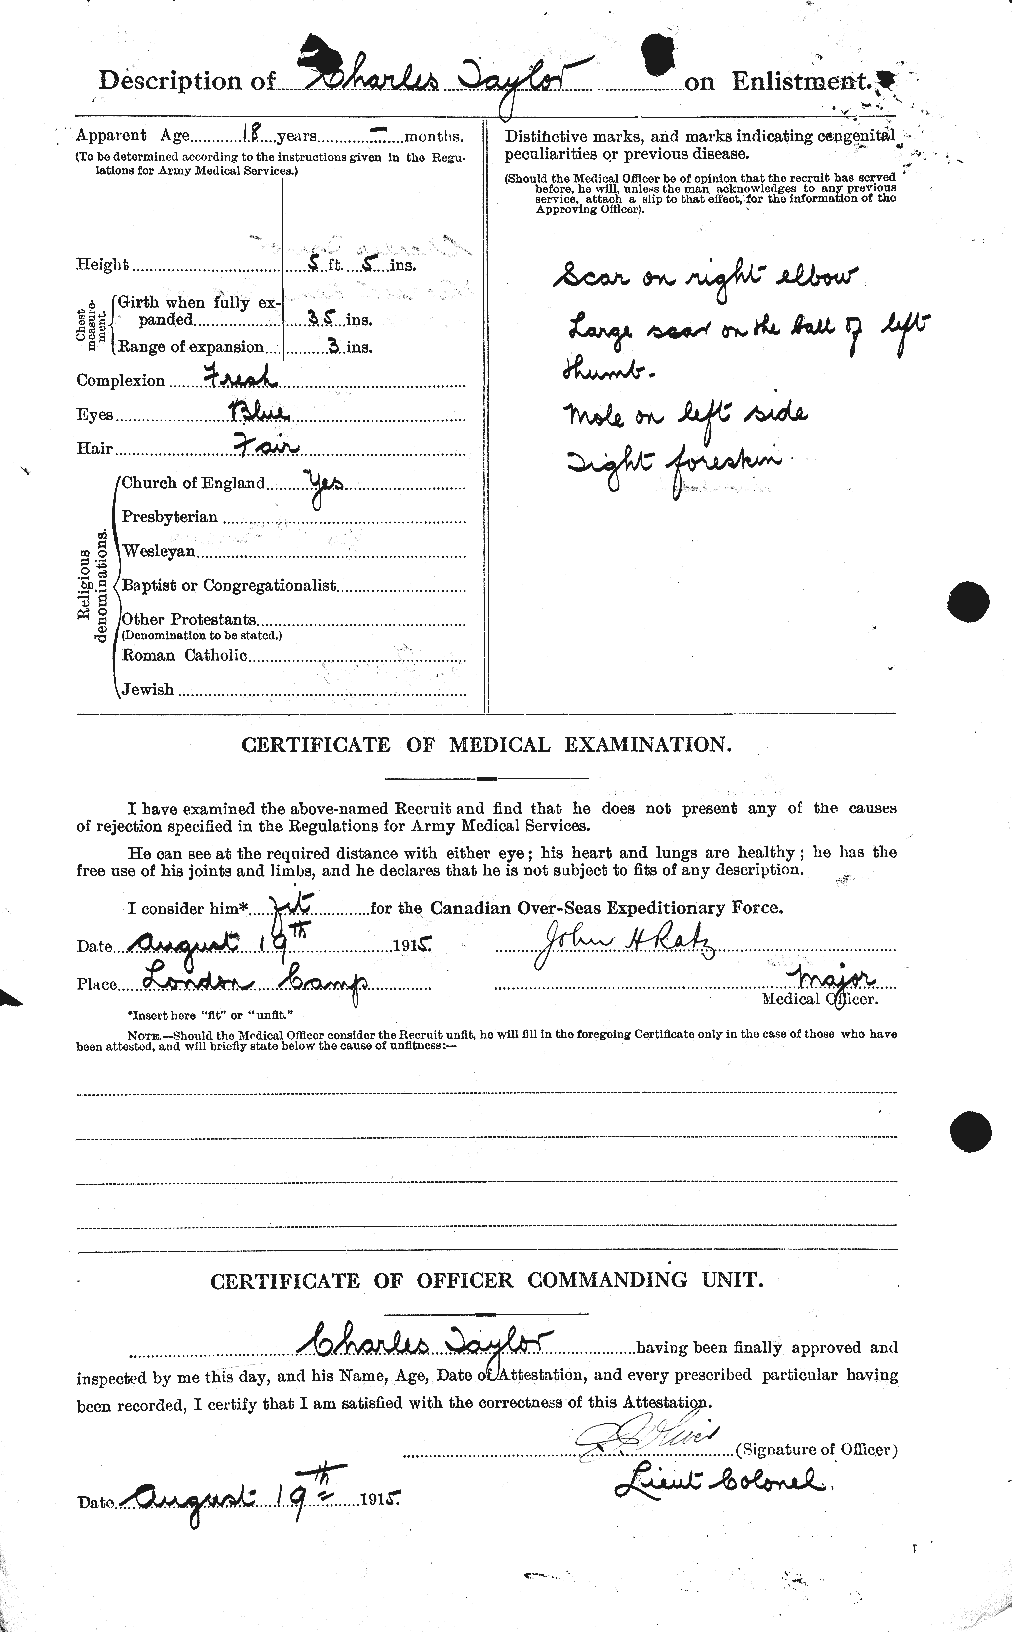 Dossiers du Personnel de la Première Guerre mondiale - CEC 626811b